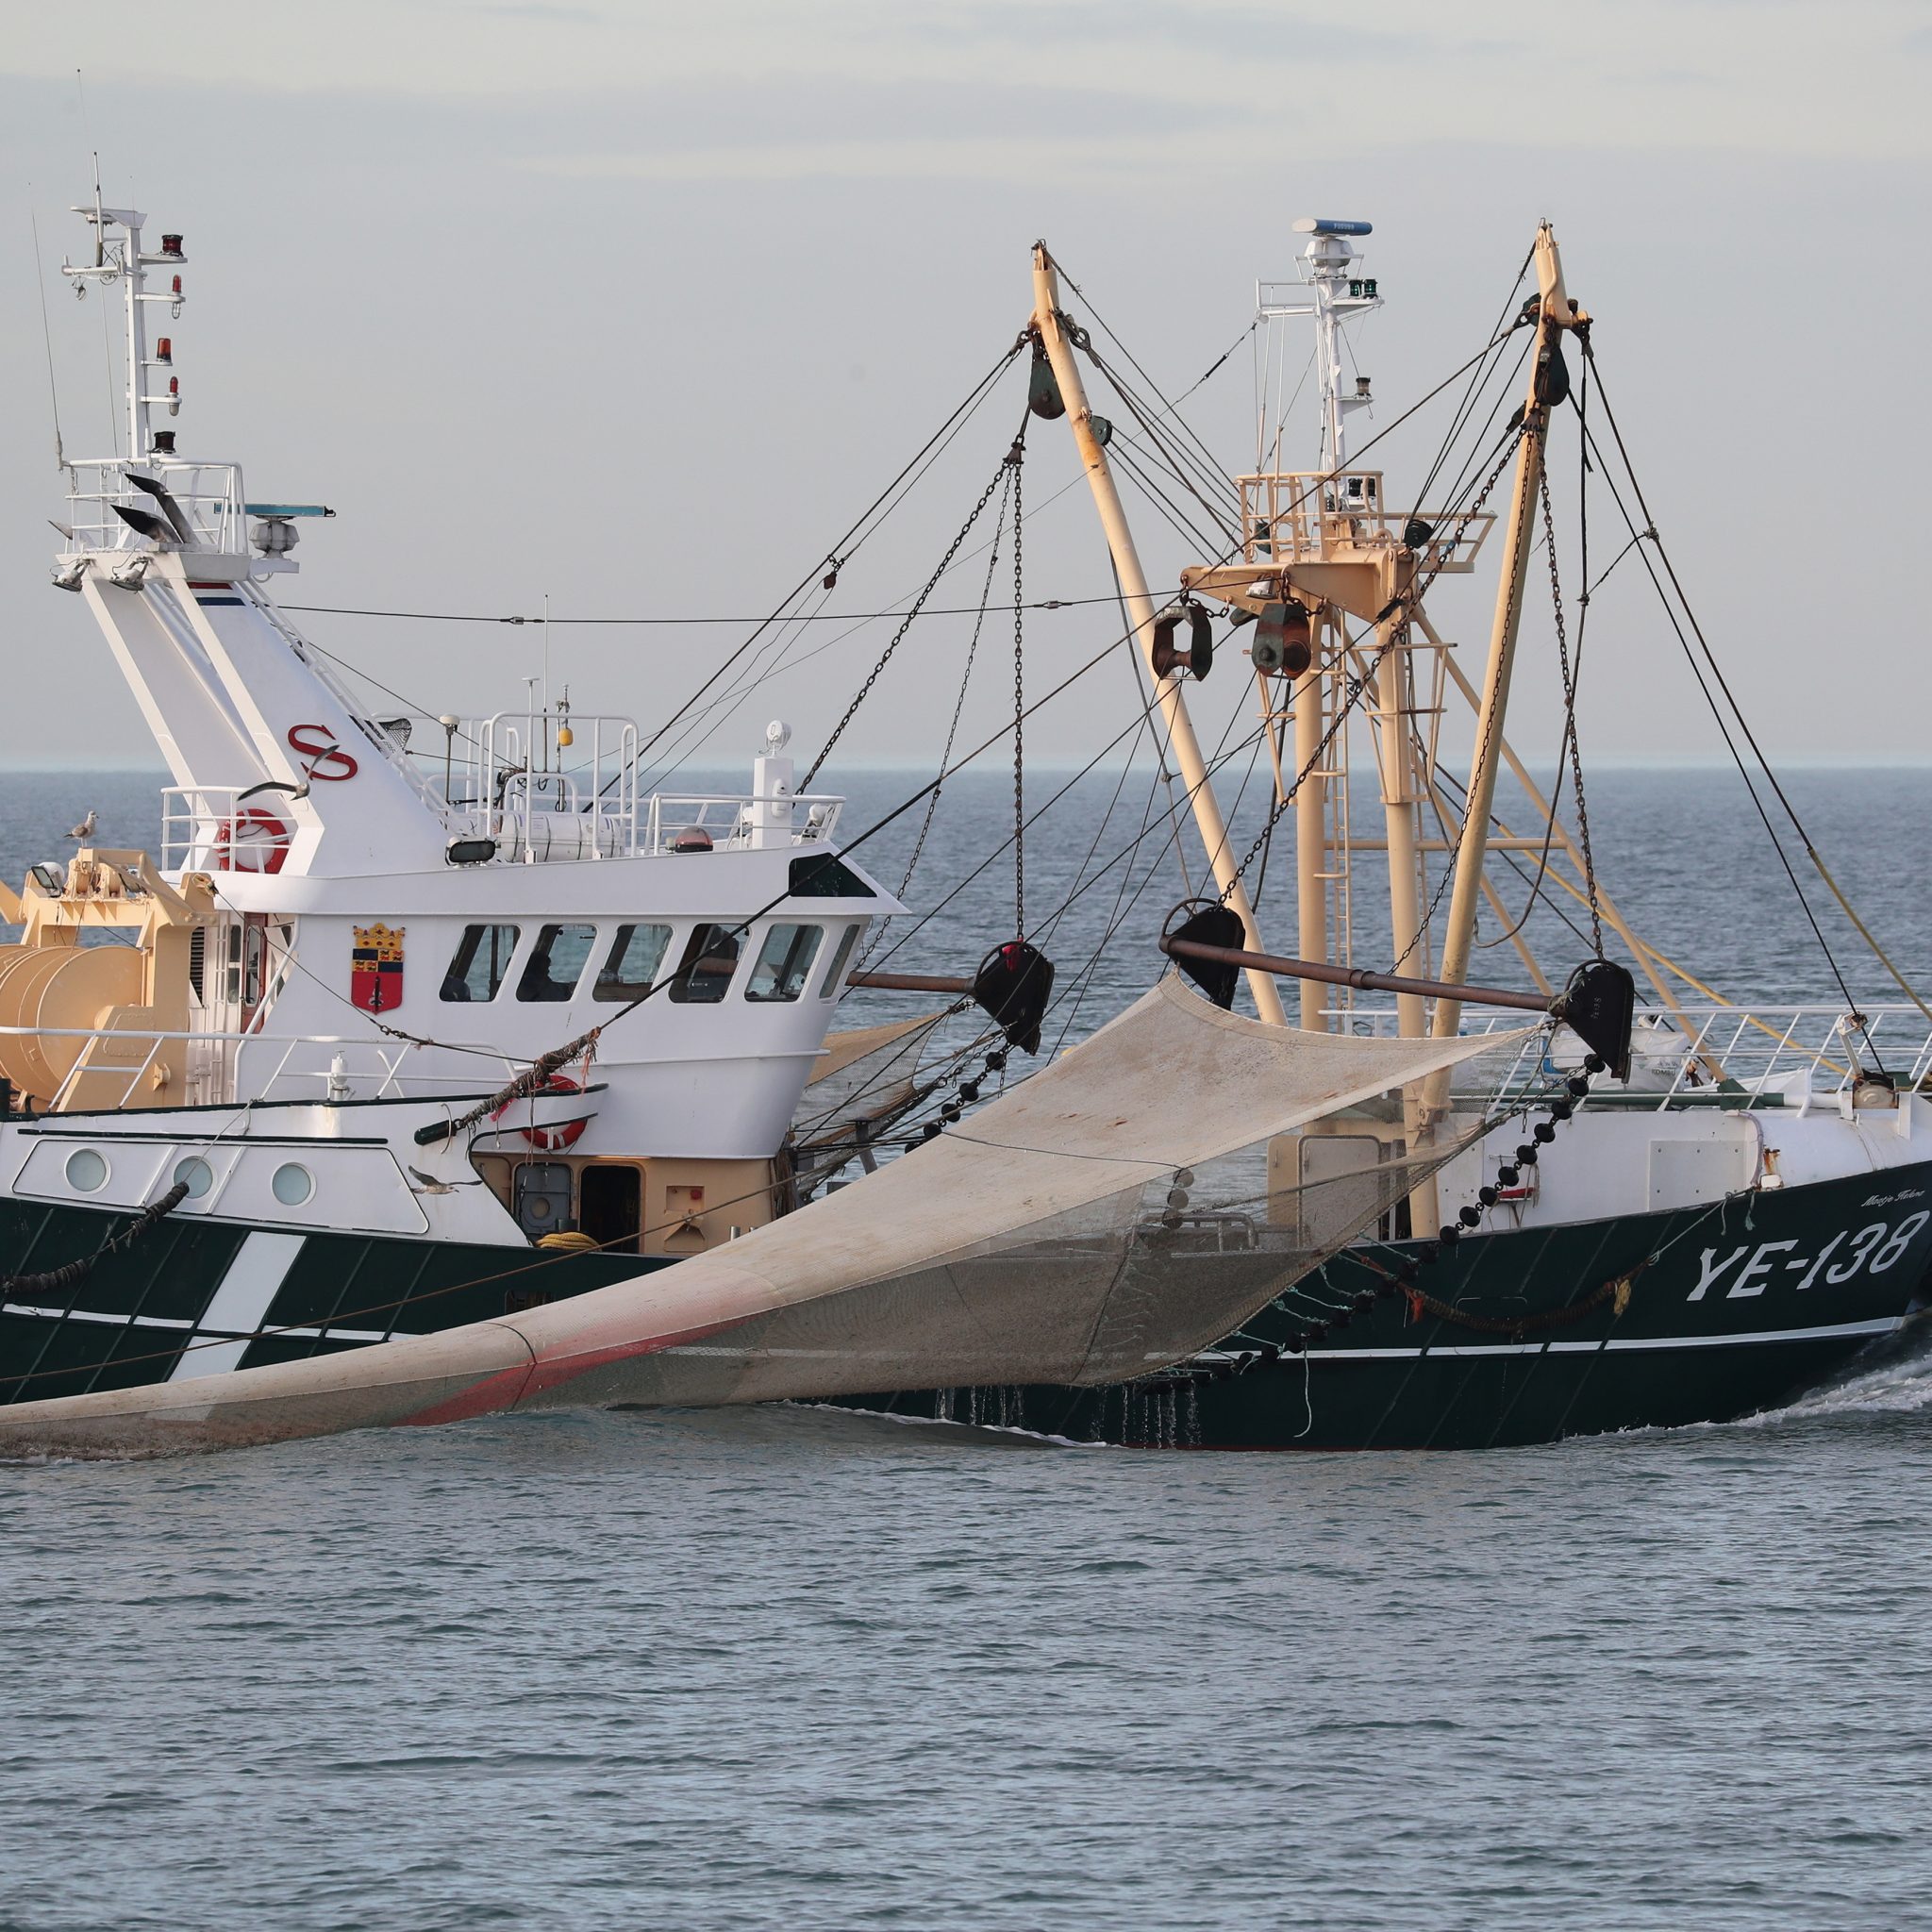 De grote garnalenkotter YE-138 van Eddy Sinke staat te koop. De visser vreest dat de overheid hem het werken onmogelijk zal maken. (Foto Bram Pronk)